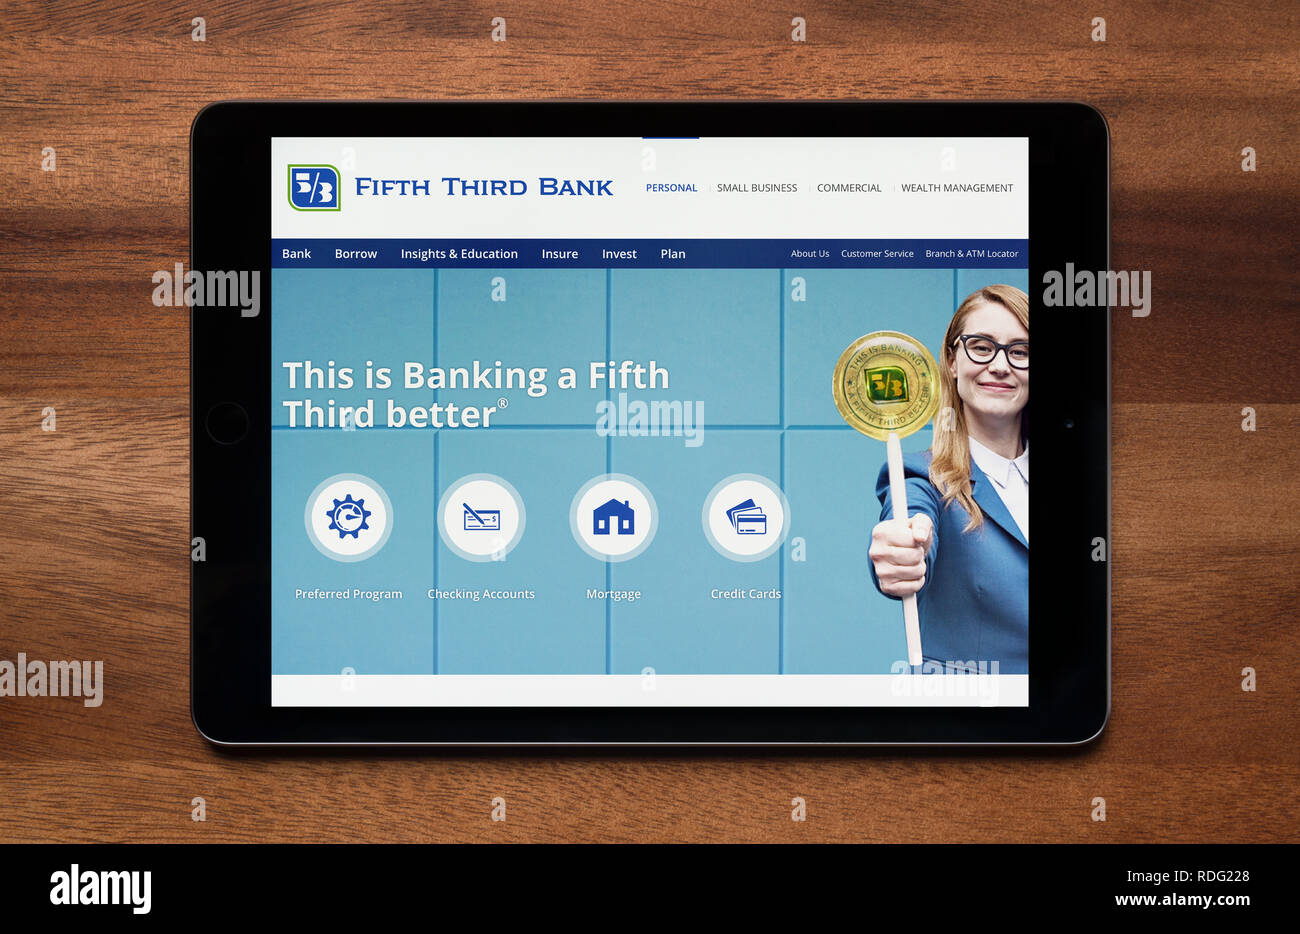 El sitio web del Fifth Third Bank es visto en un iPad, que descansa sobre una mesa de madera (uso Editorial solamente). Foto de stock